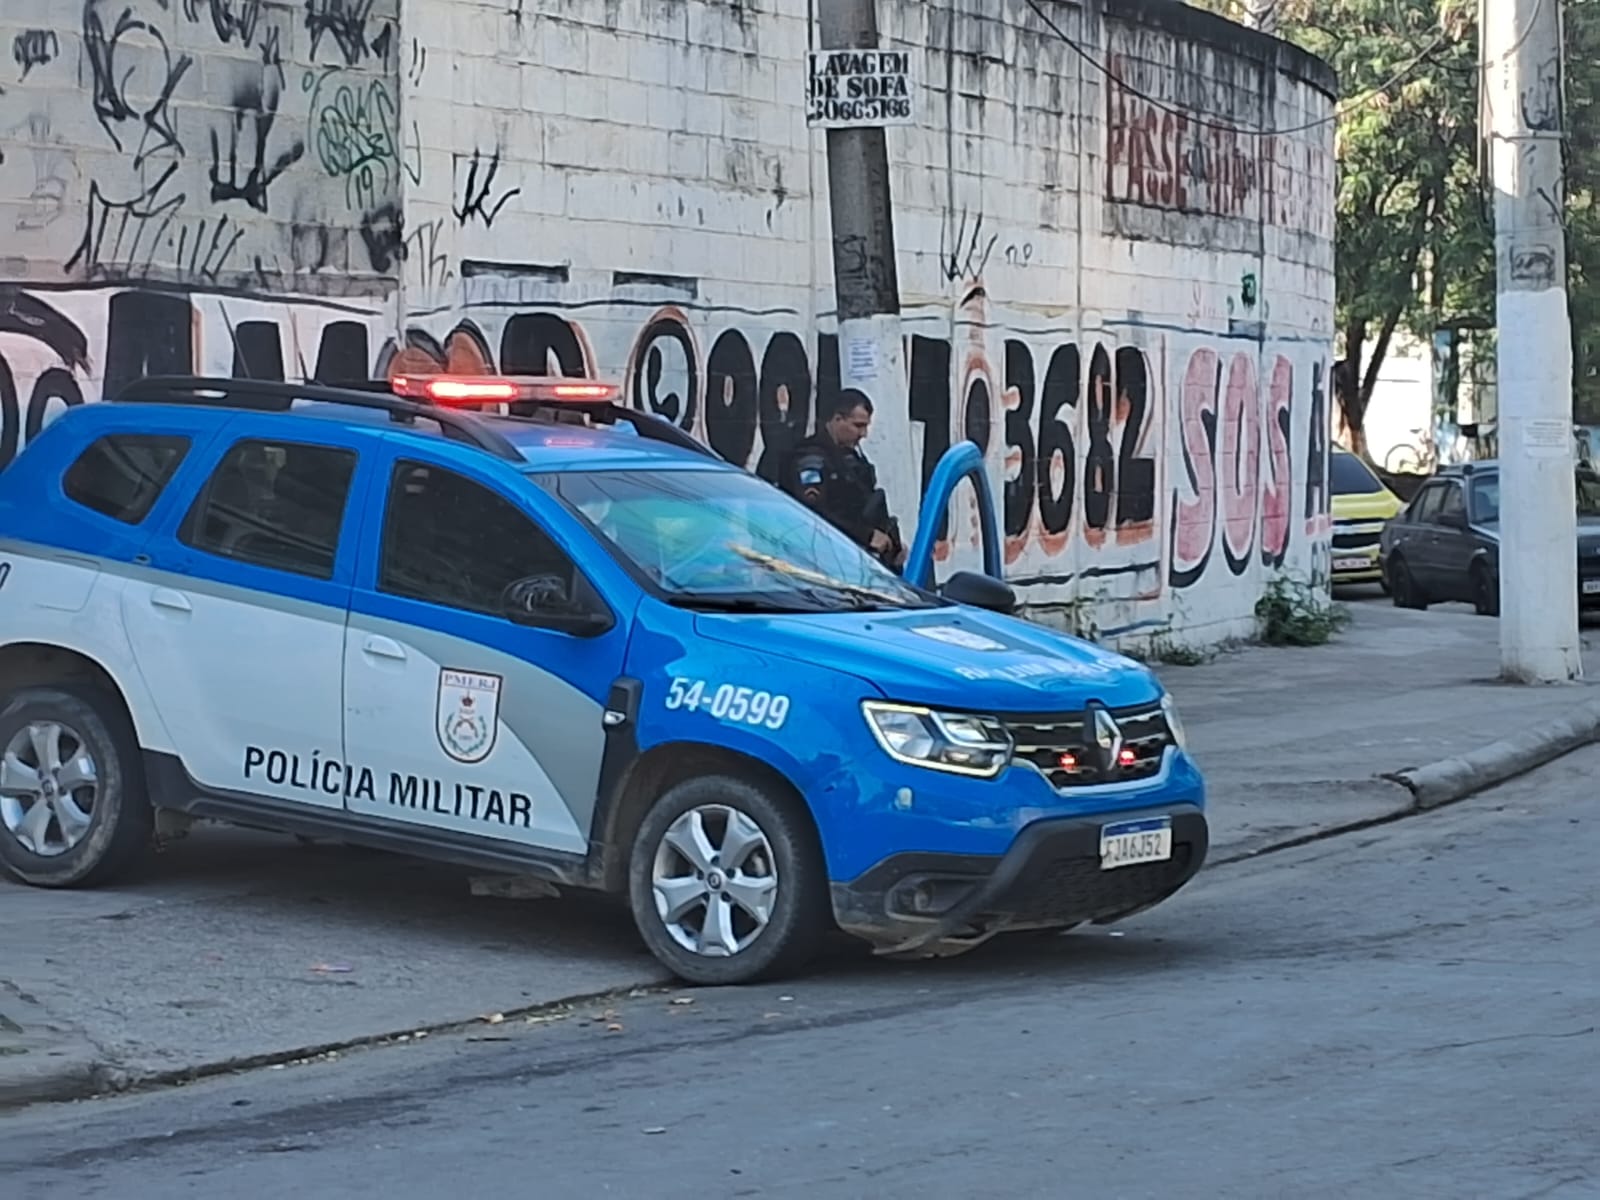 Polícia Militar no Complexo da Maré.